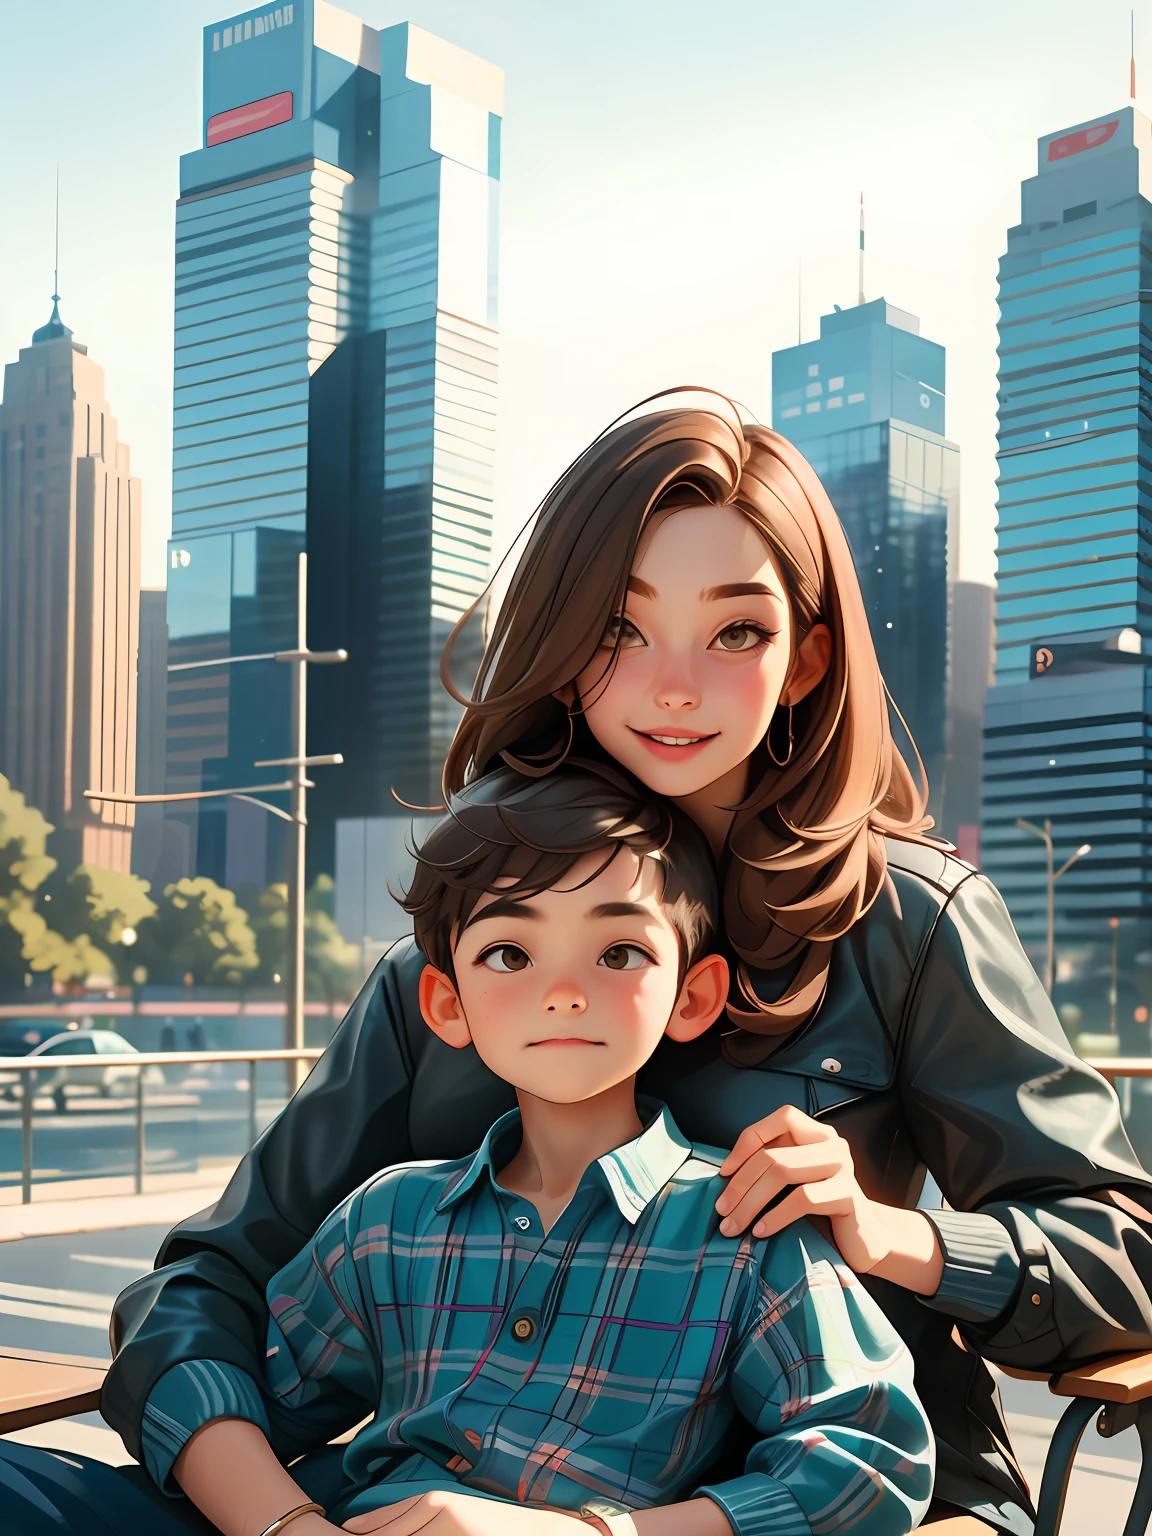 6-летний мальчик с каштановыми волосами, на коленях у матери, также с каштановыми волосами до плеч, в городе, полном современных зданий